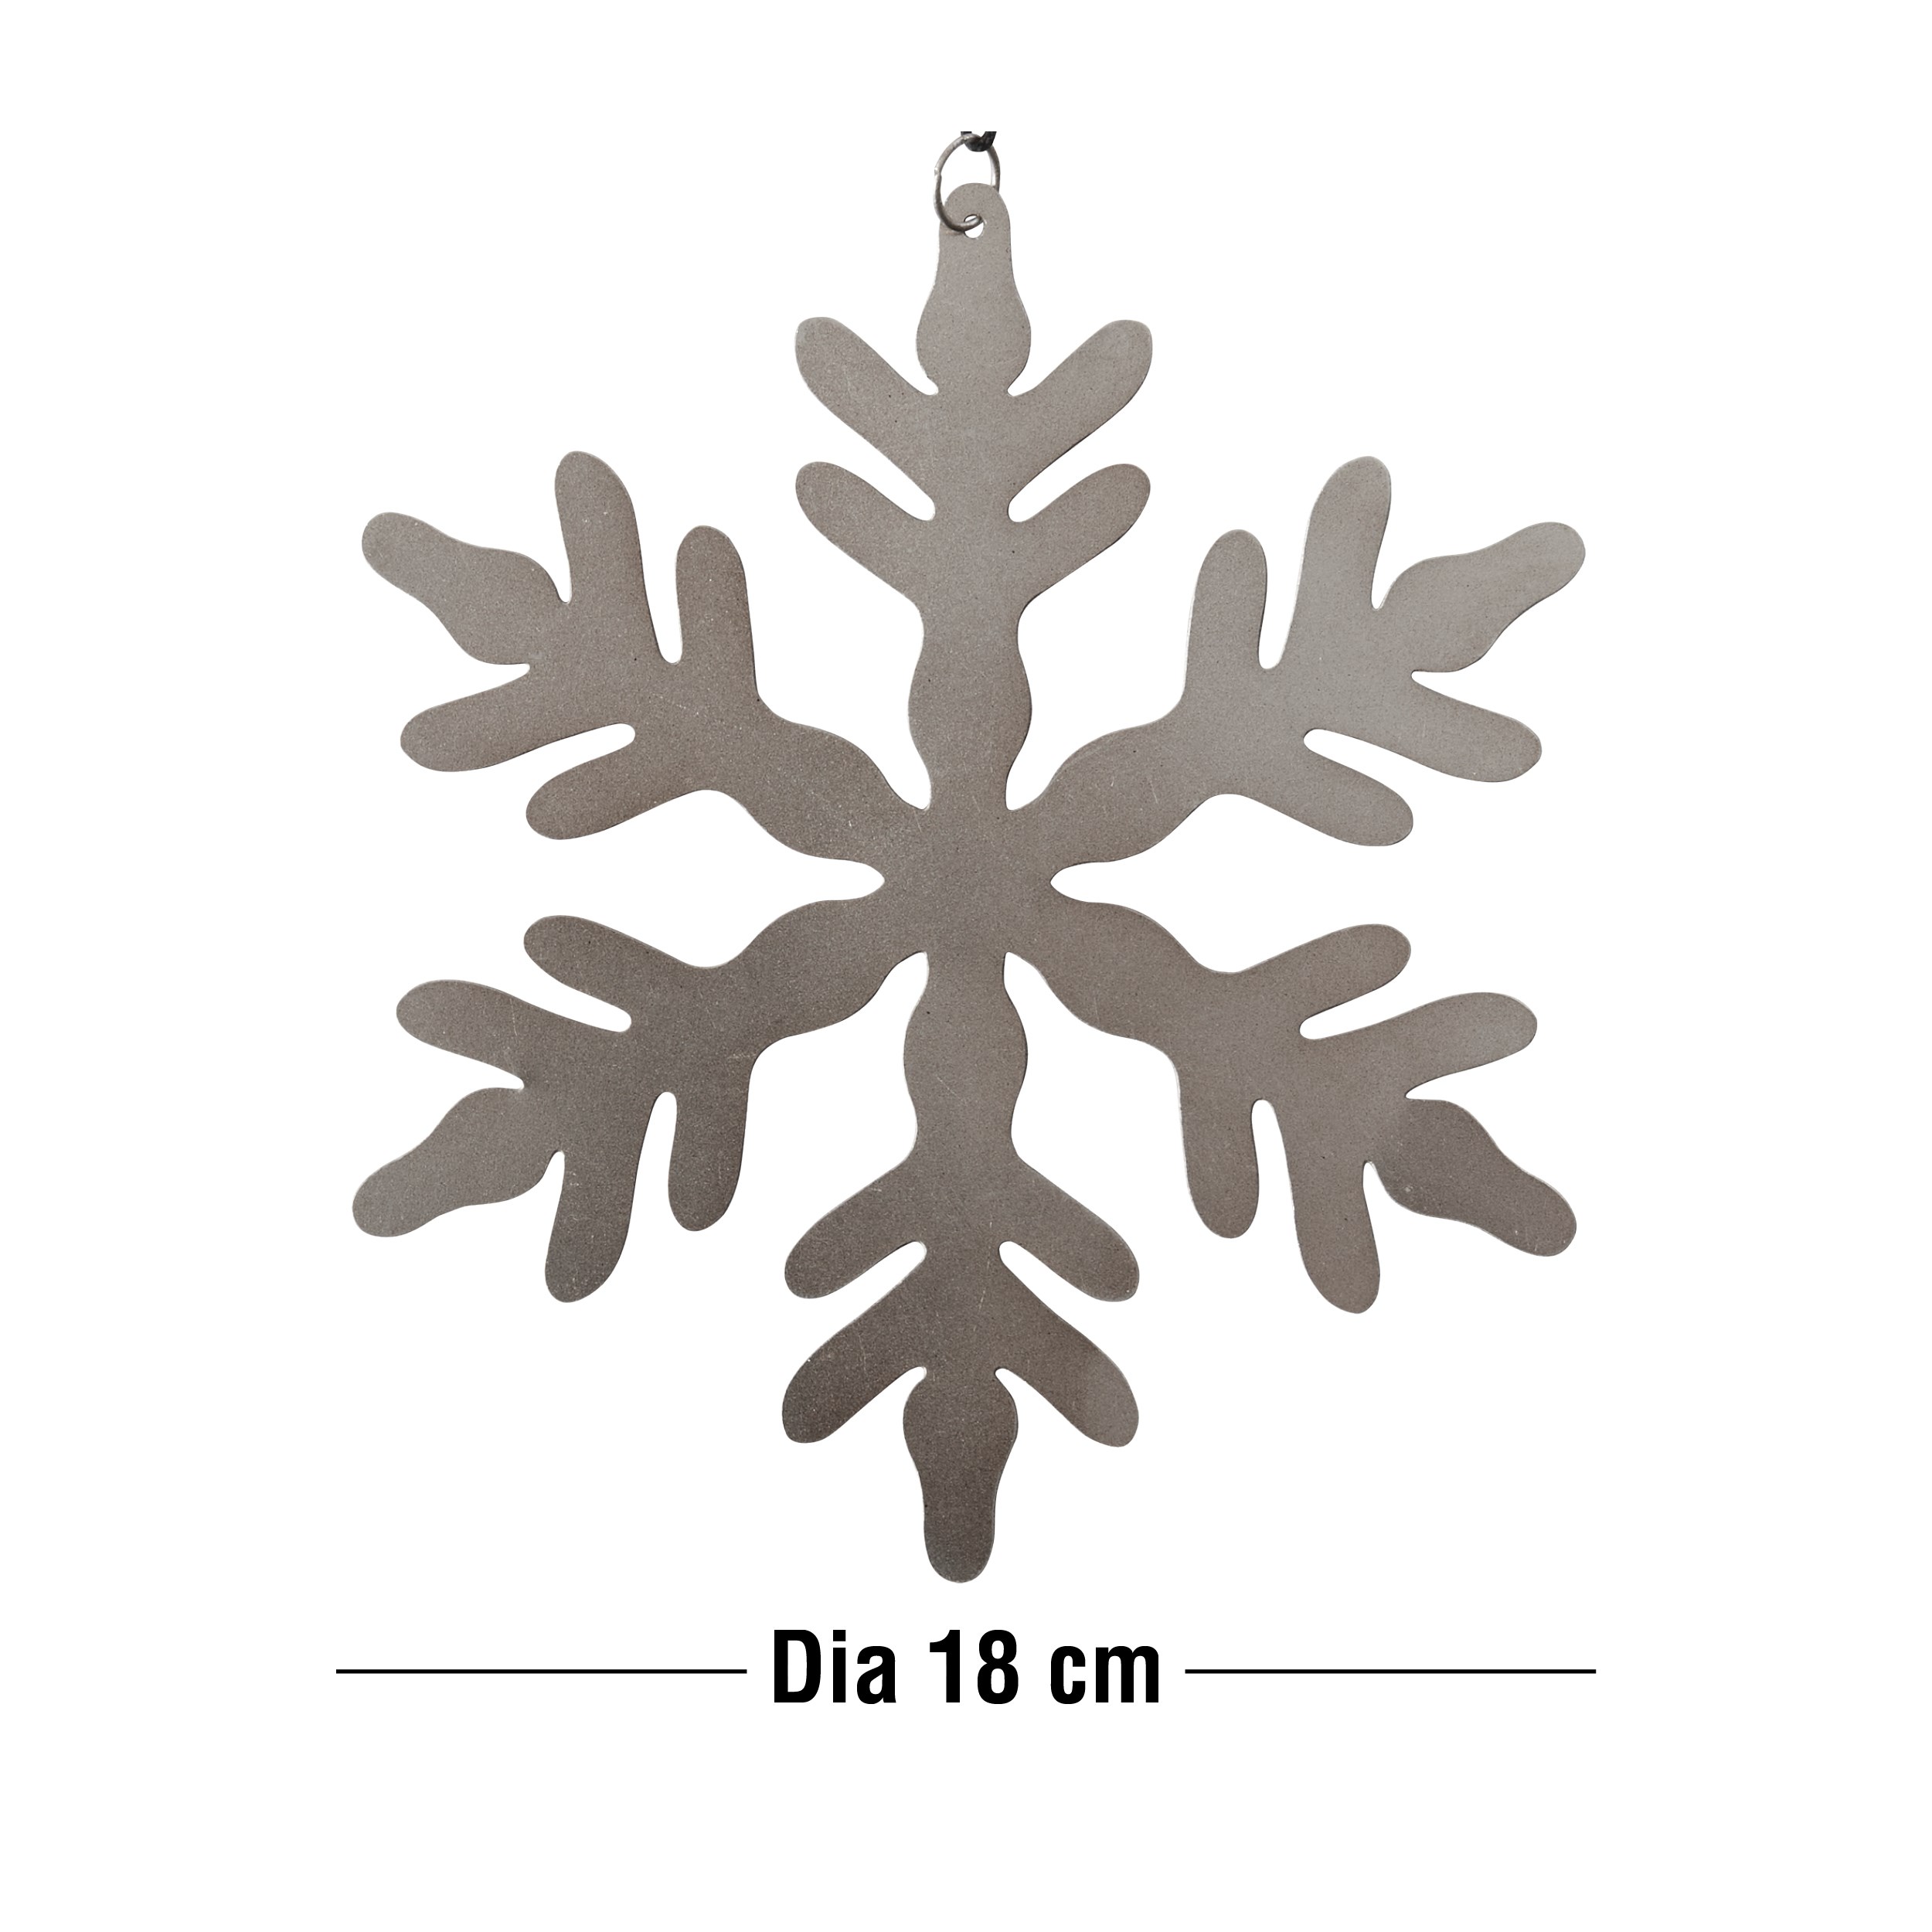 Løkkeby Julepynt 18 cm 